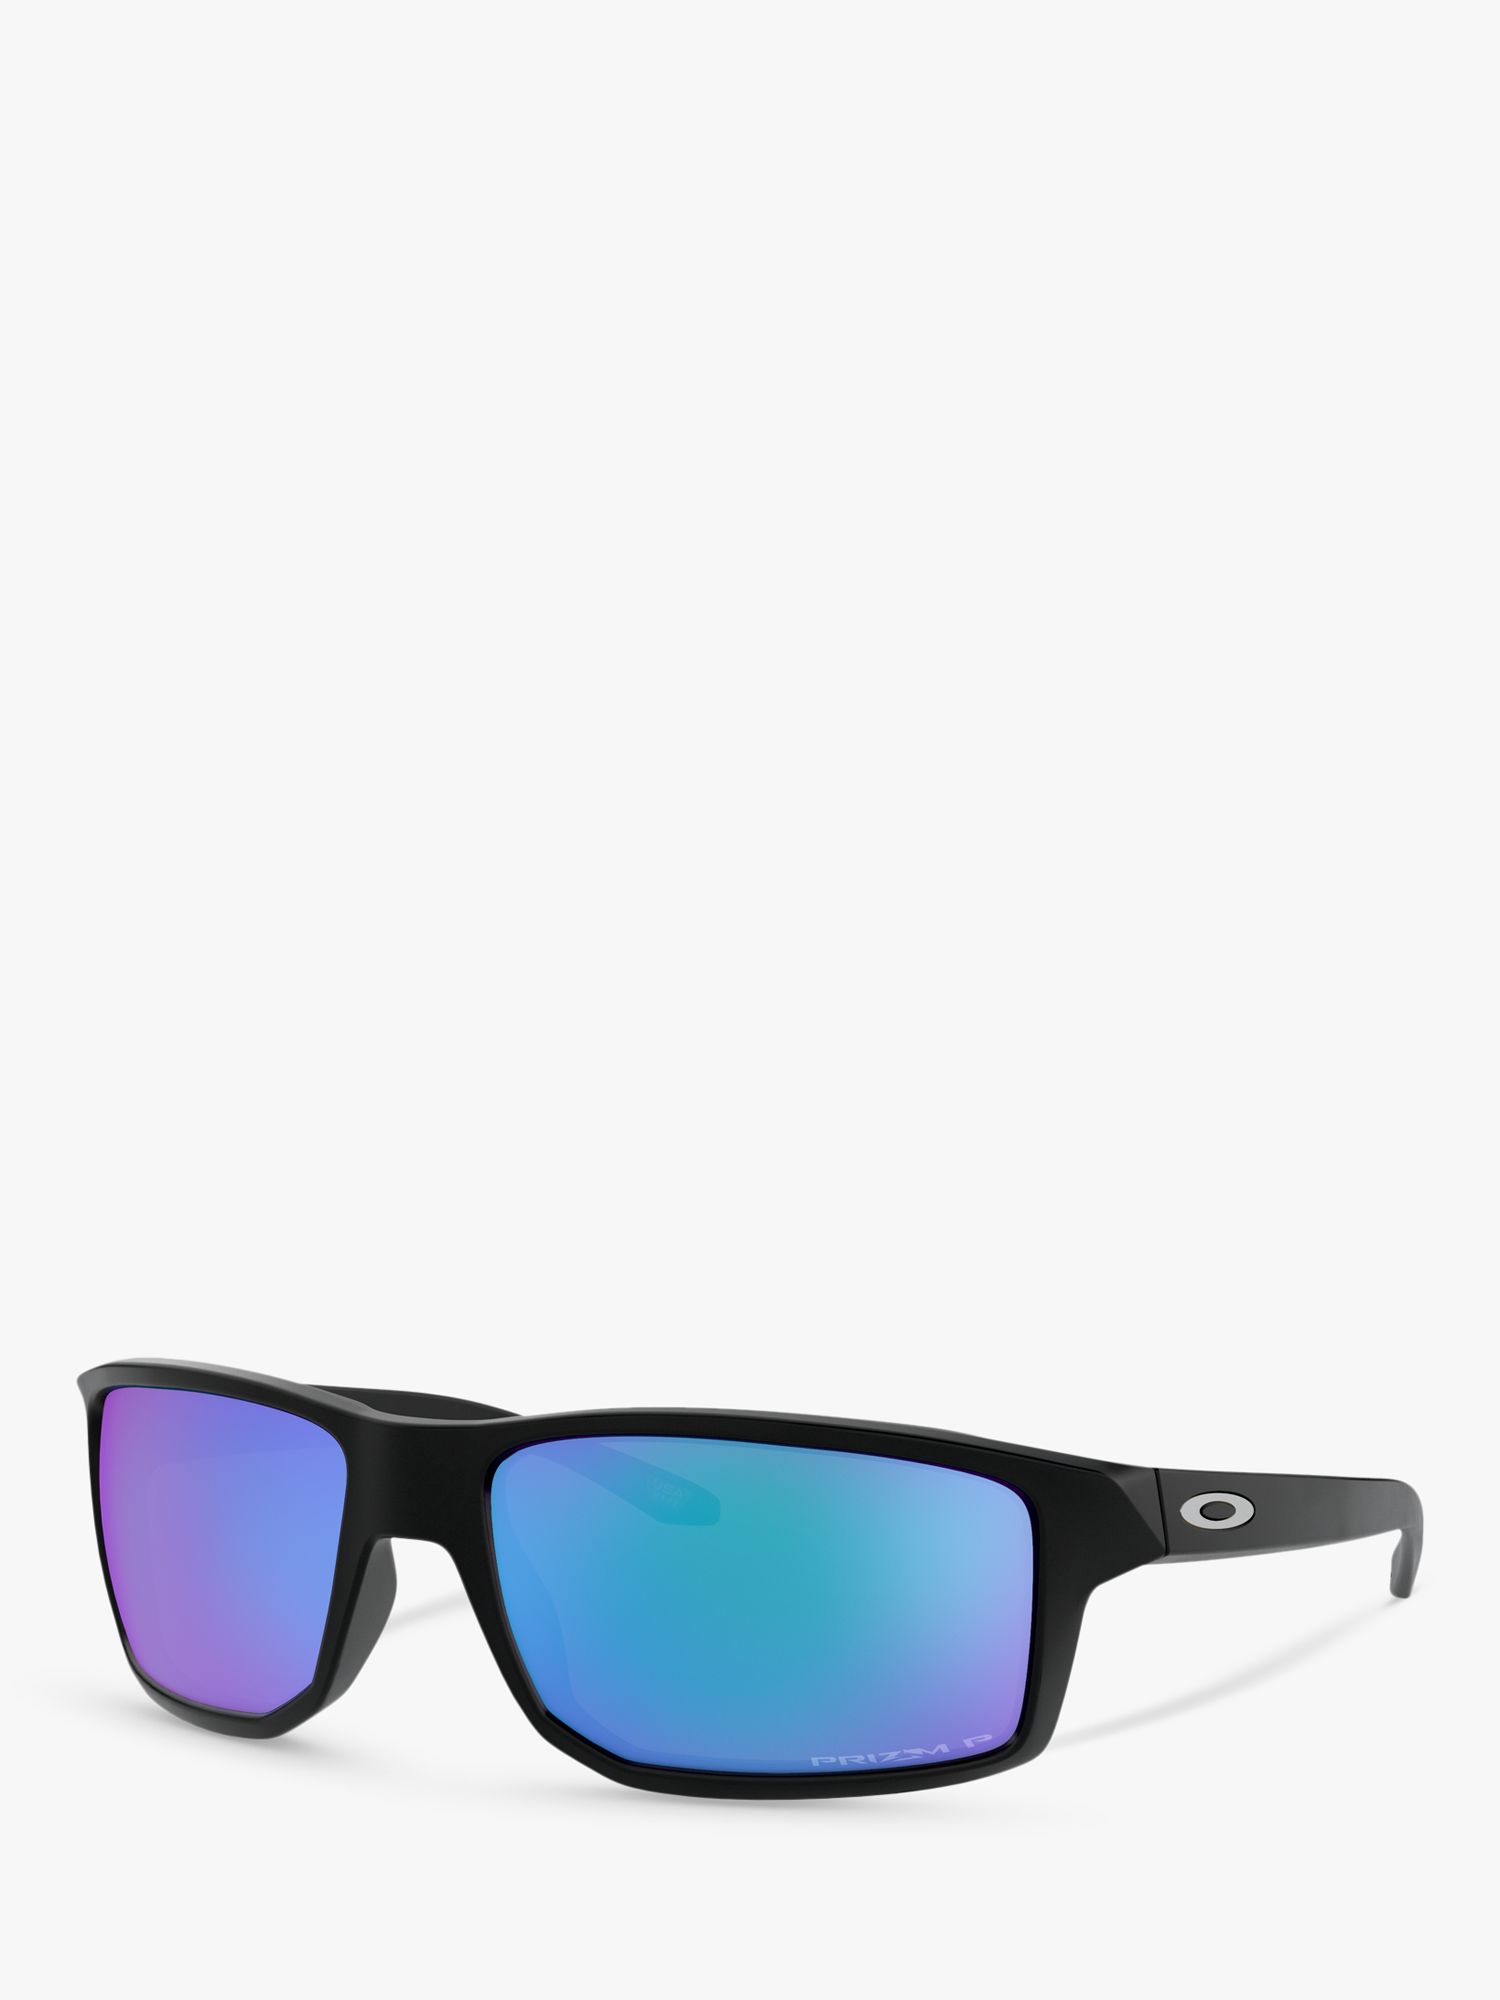 Мужские поляризационные квадратные солнцезащитные очки Oakley OO9449, матовые черные